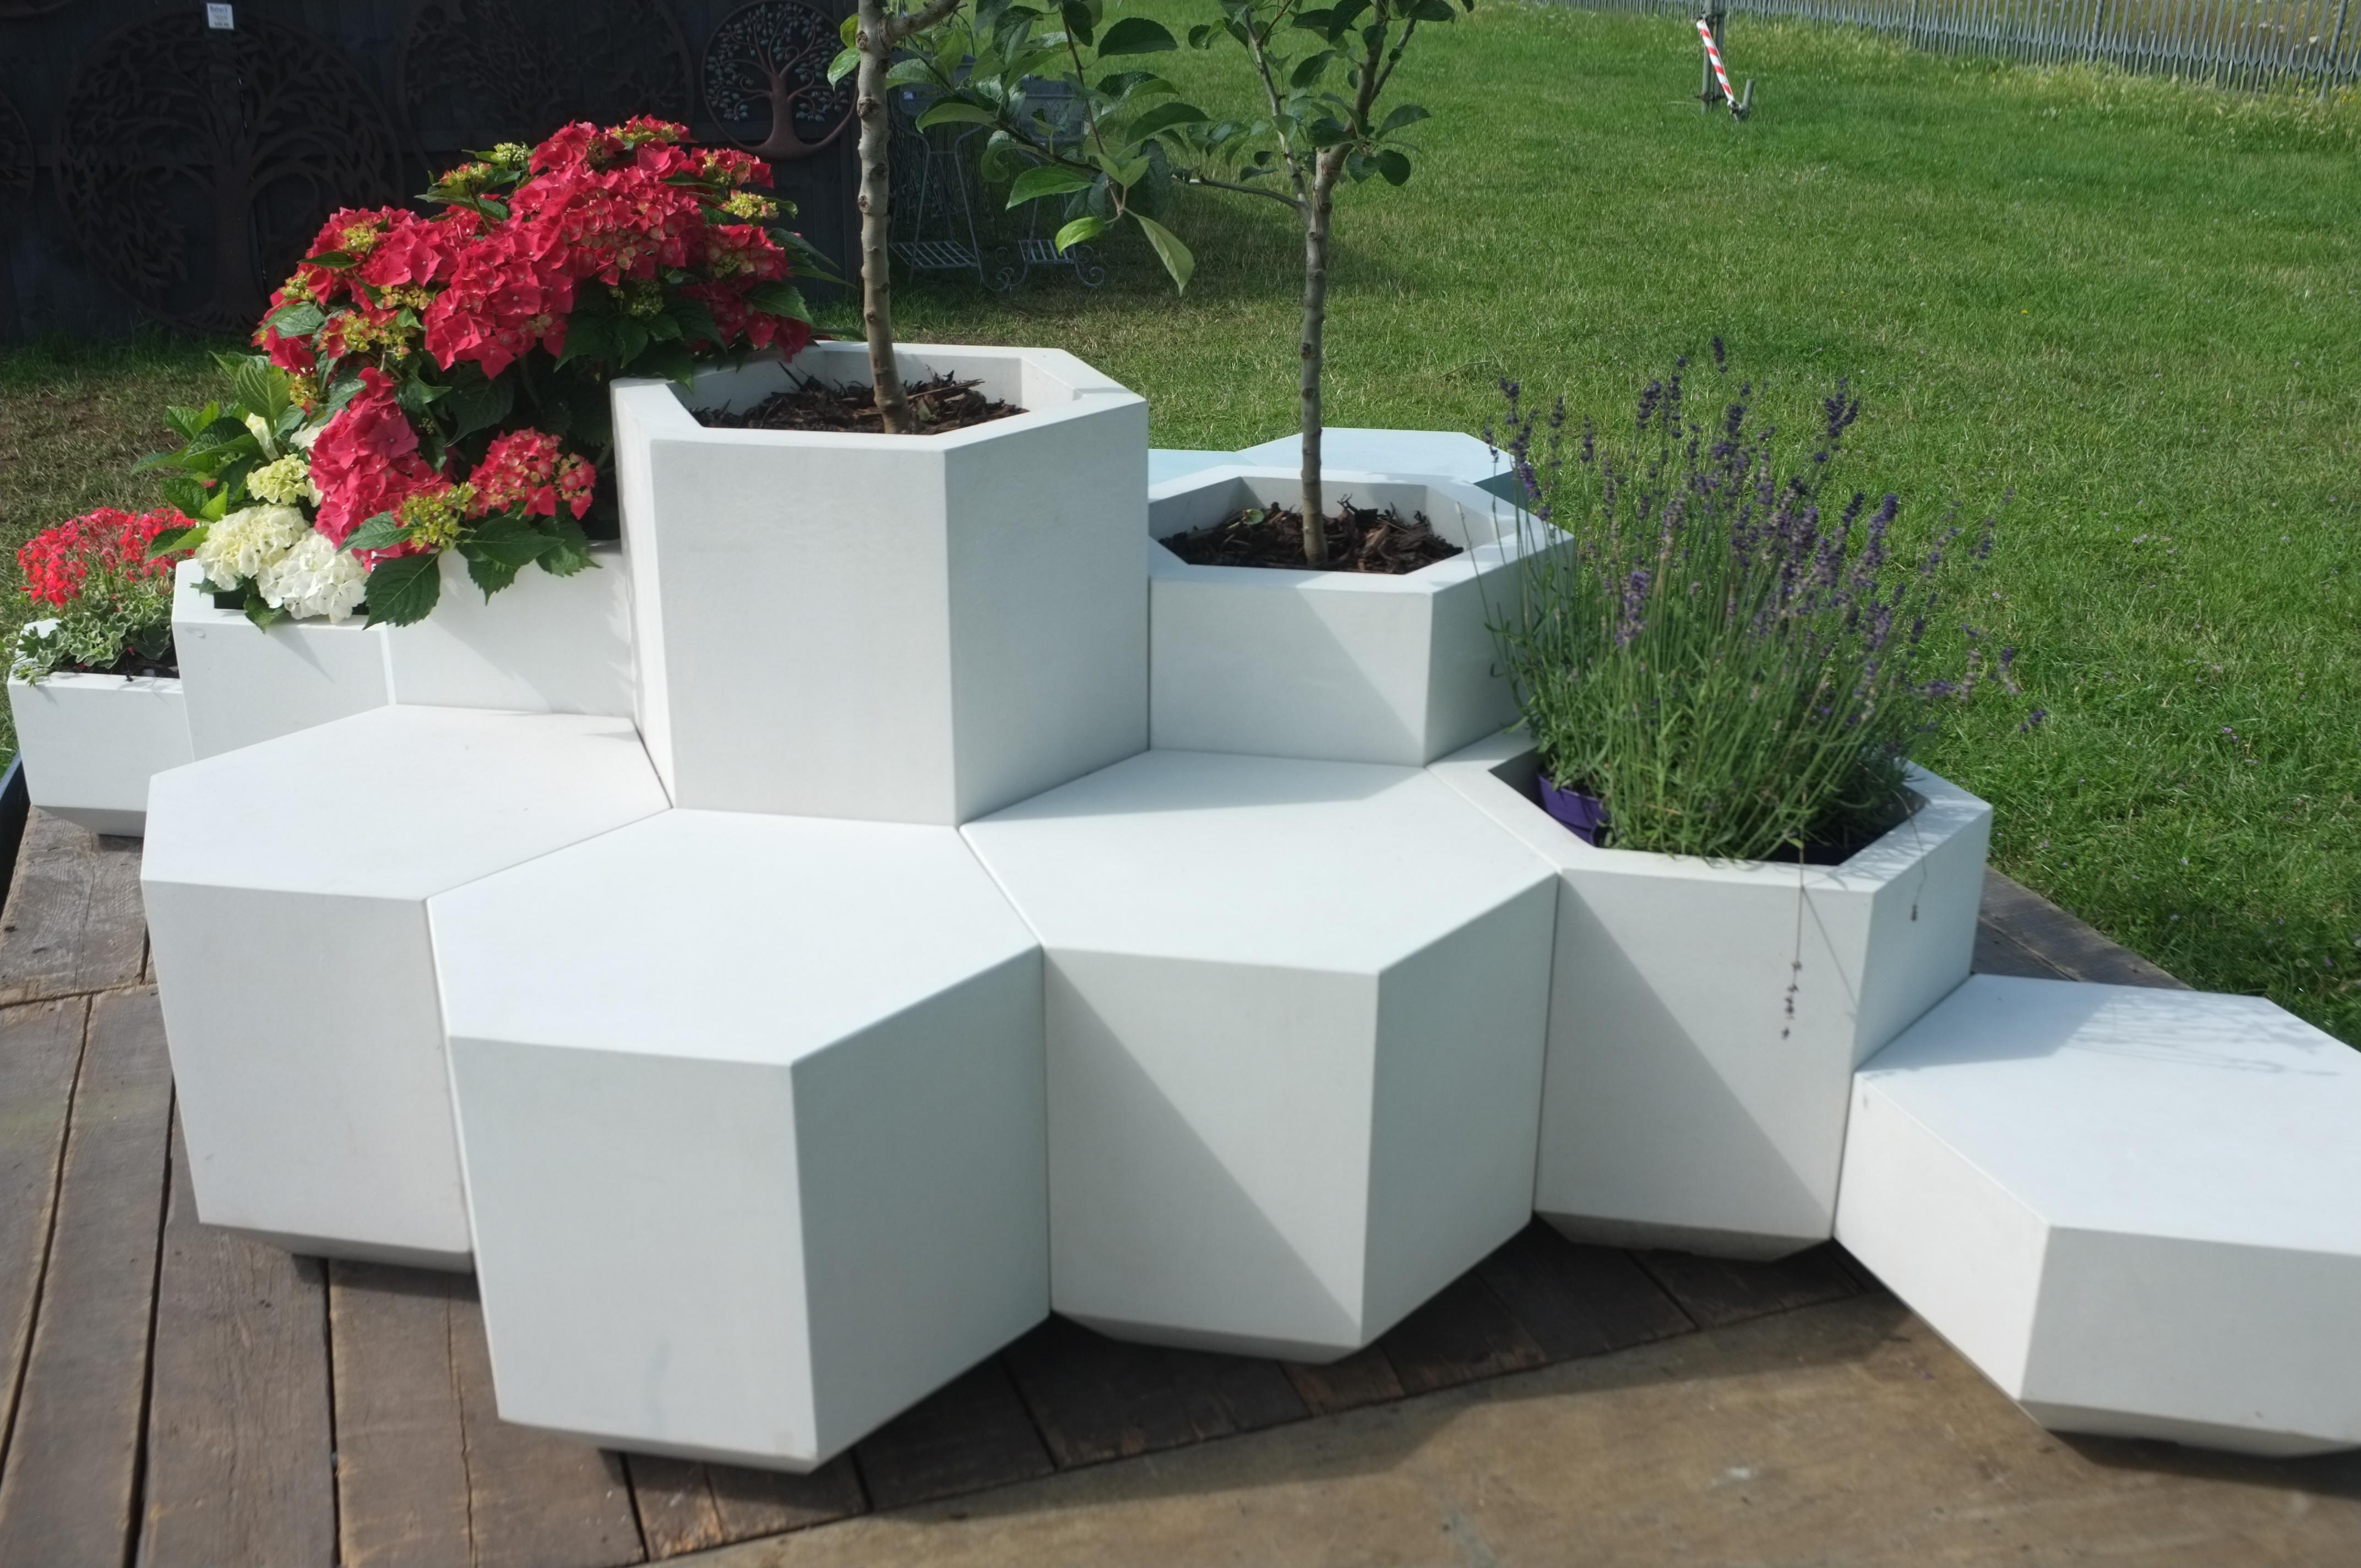 Der Hex-Block-Pflanzkübel ist ein perfektes Sechseck. Diese schlichte, geometrische Form ist handgefertigt, um im Freien auch bei rauem Wetter zu überleben, aber mit ihrer taktilen, glatten Betonoberfläche eignet sie sich ebenso gut als Möbelstück